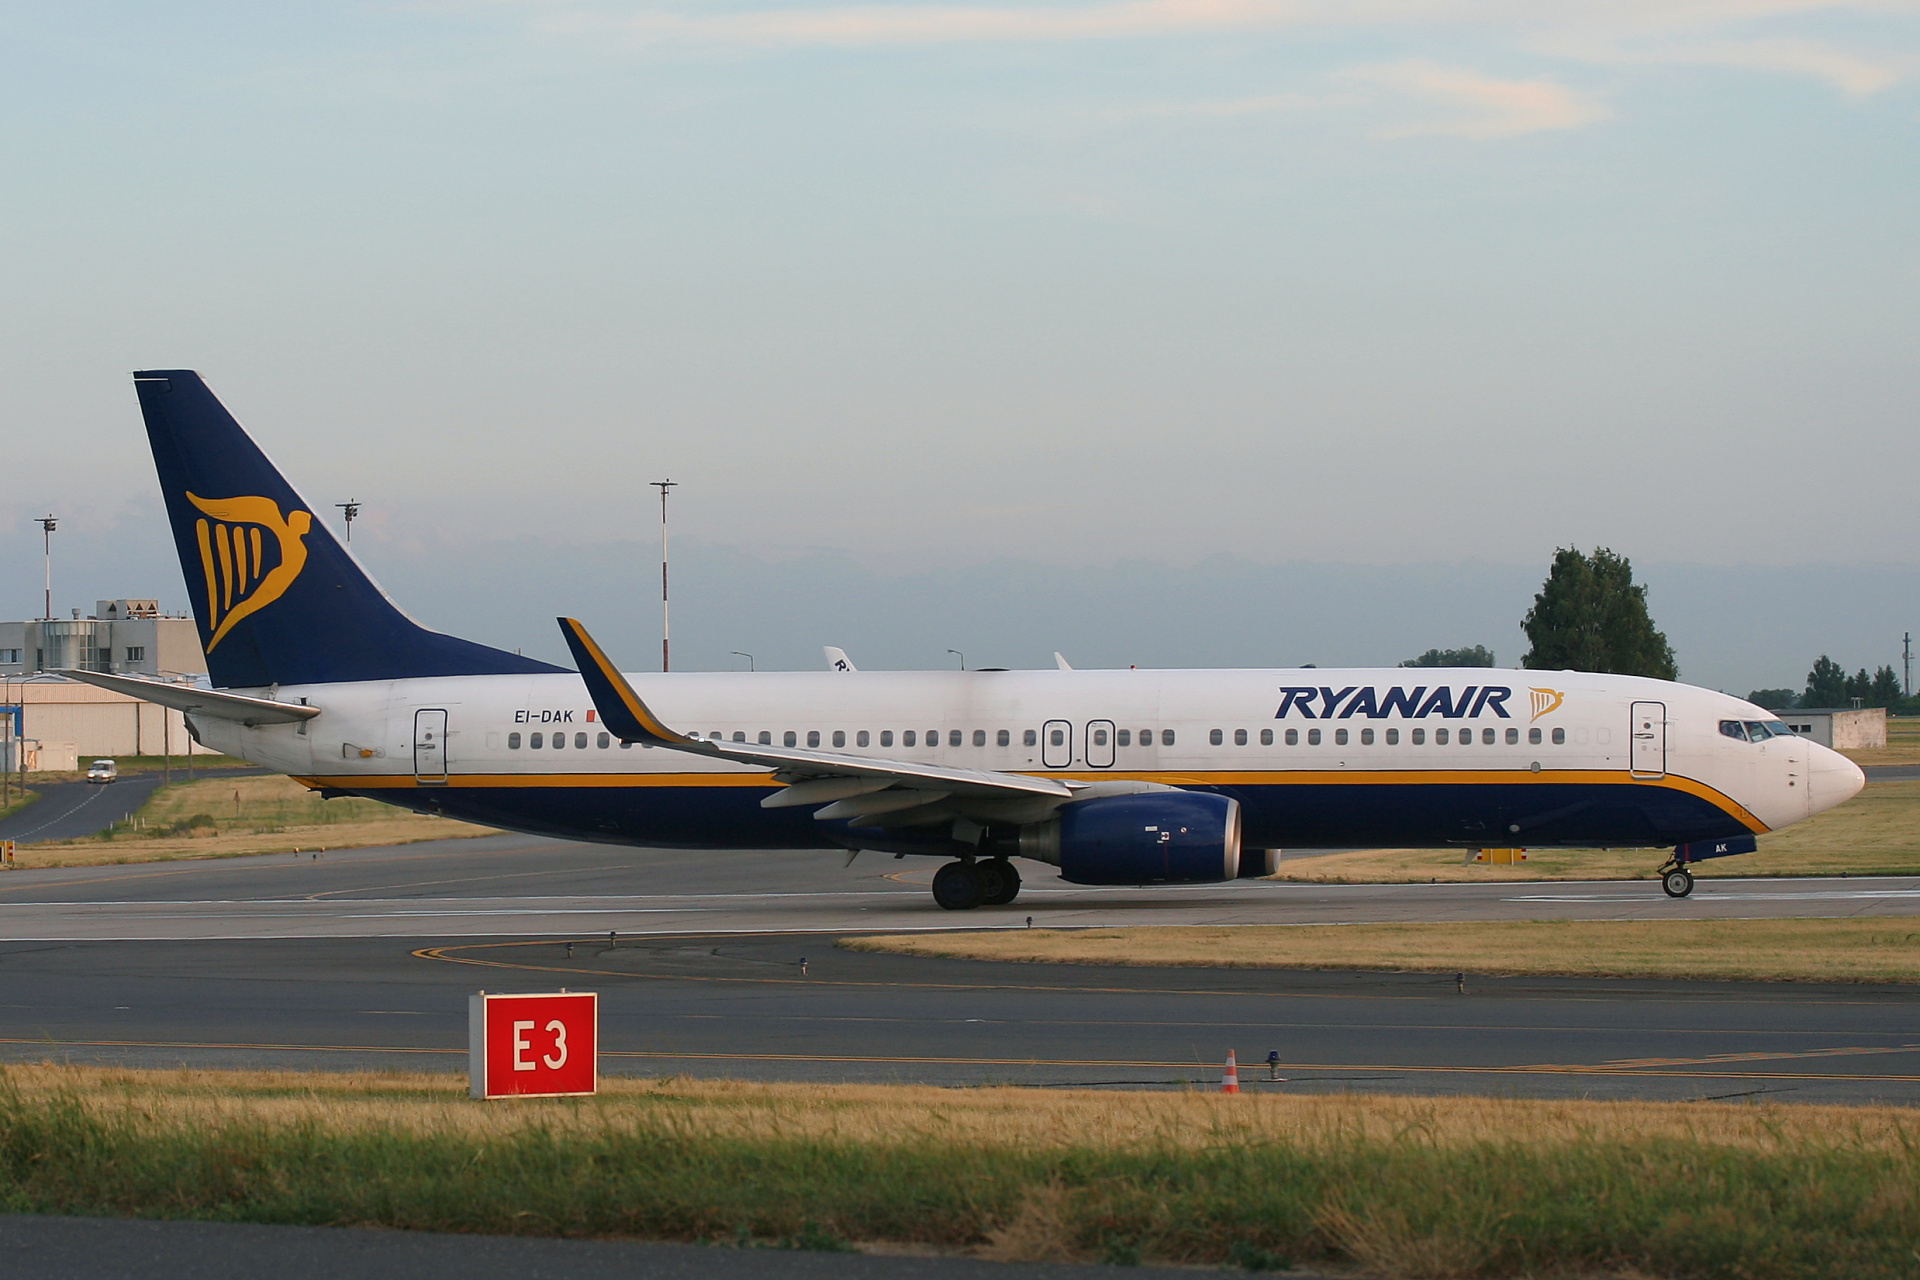 EI-DAK (Samoloty » Spotting na EPWA » Boeing 737-800 » Ryanair)